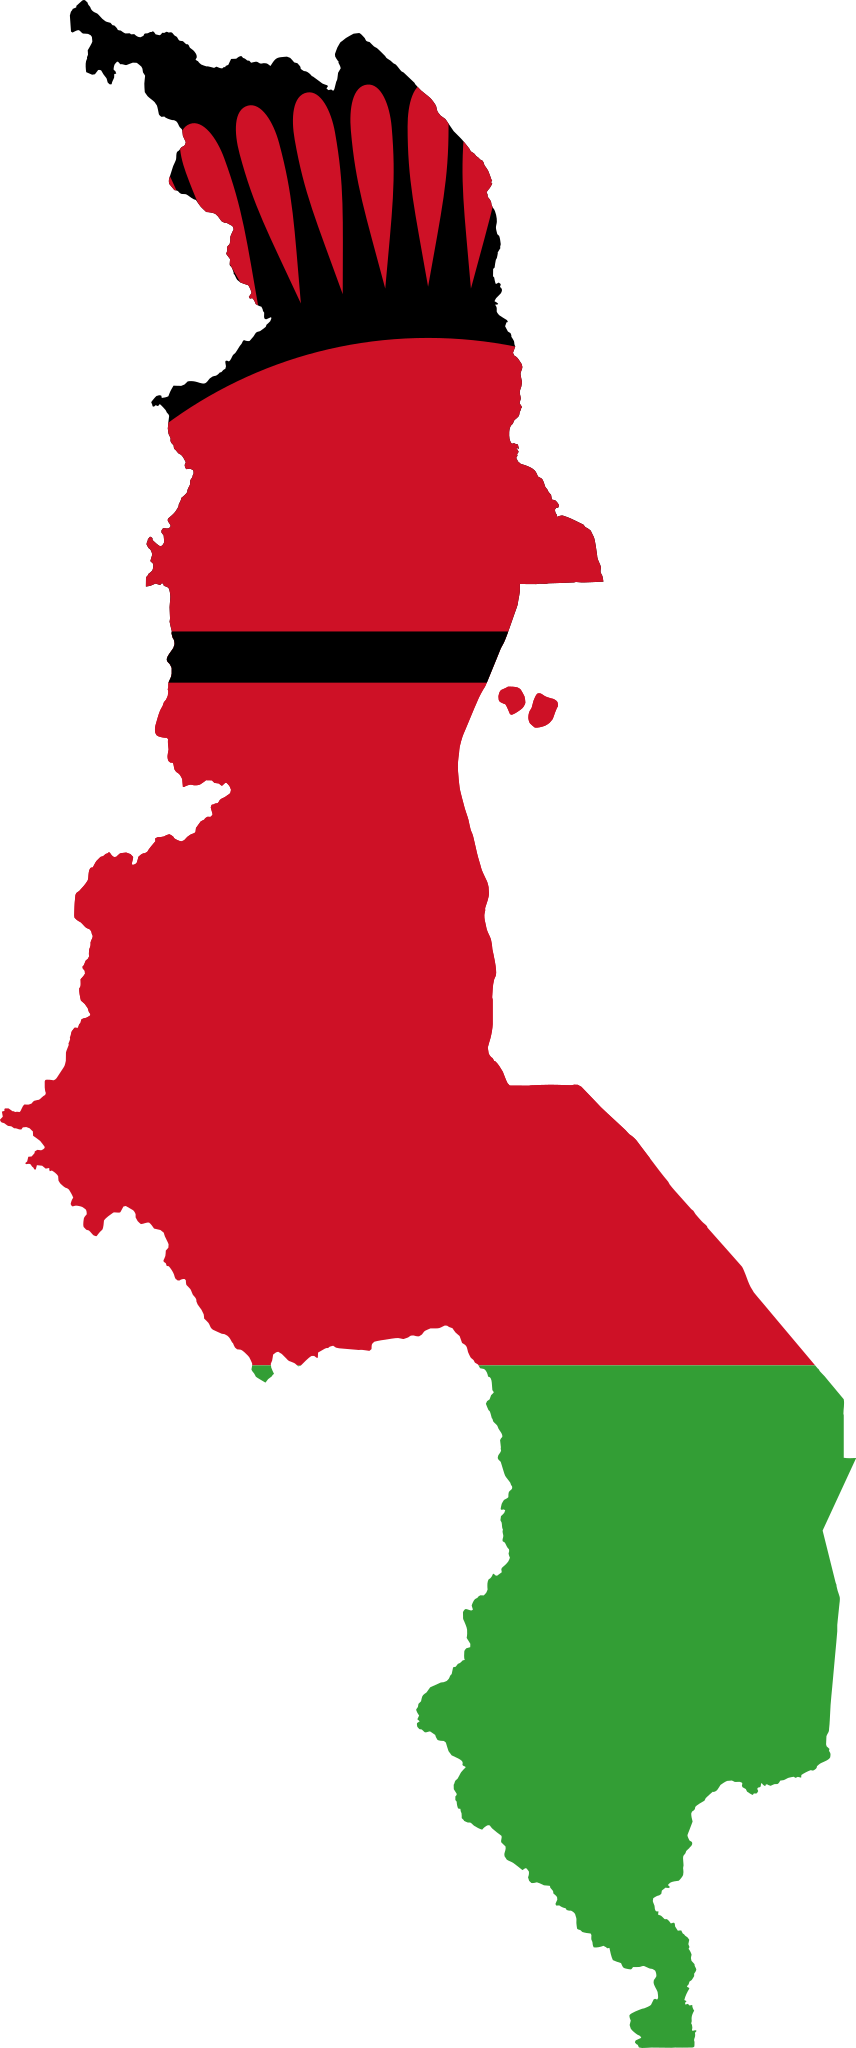 Malawi Flag Transparent Images